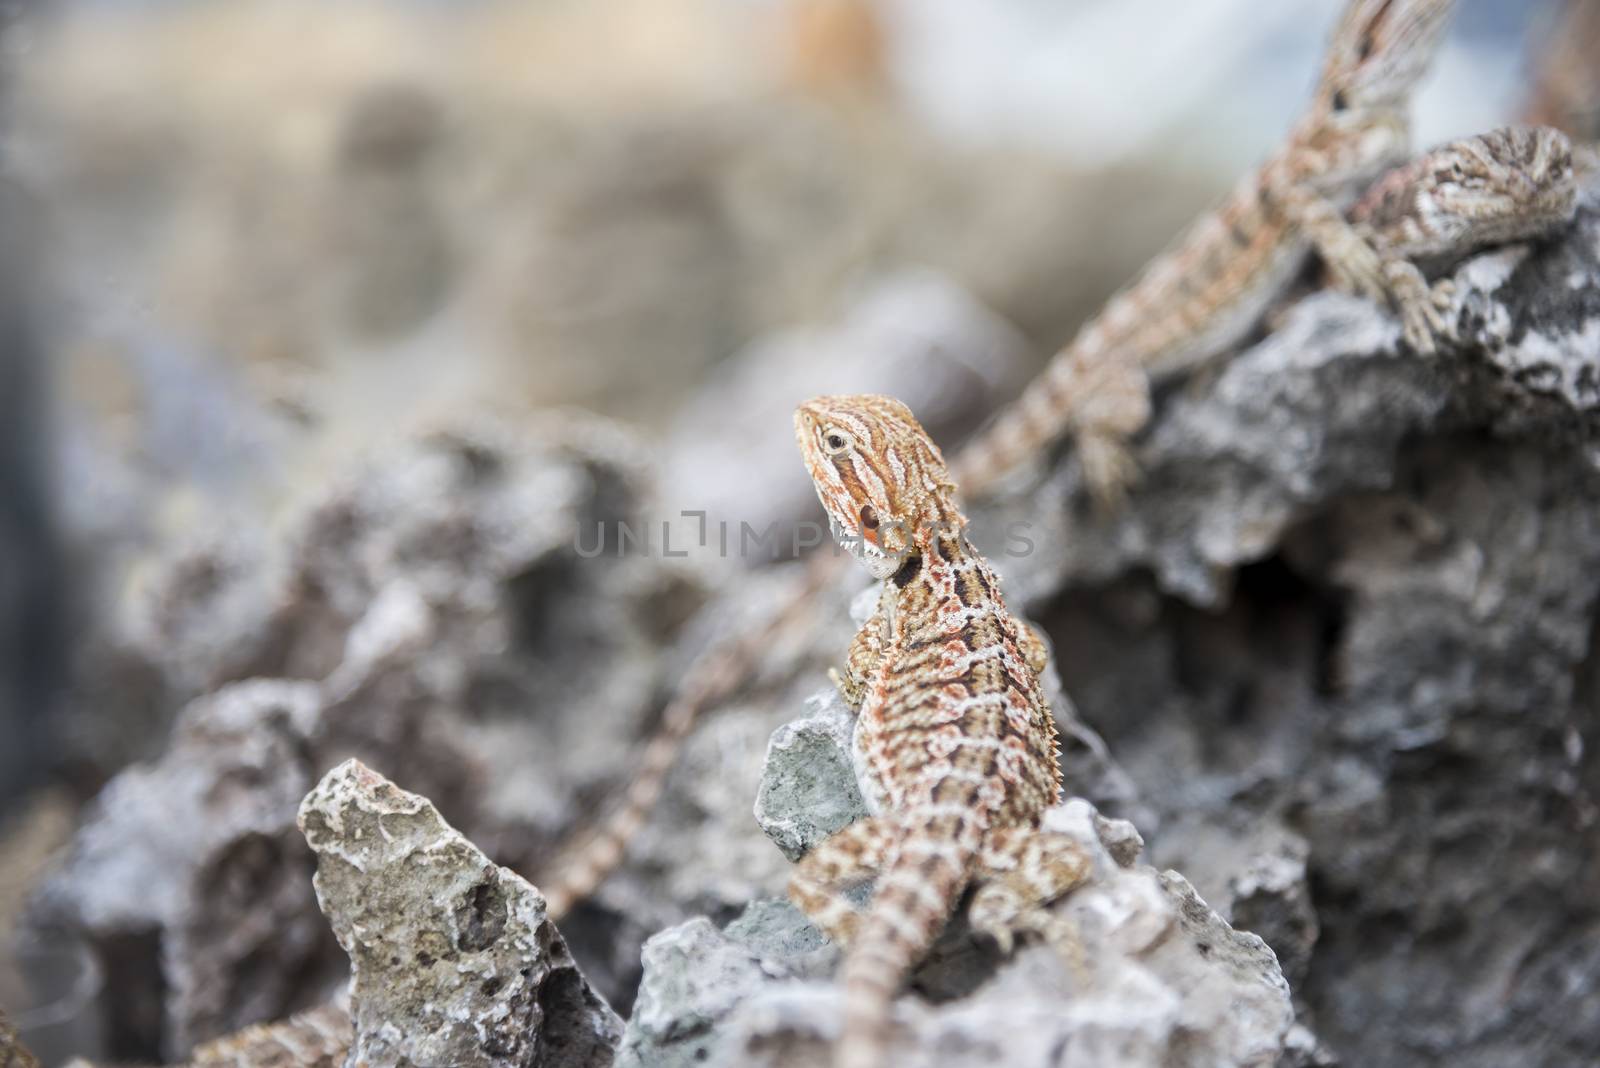 Bearded Dragon Agama Lizard on stone